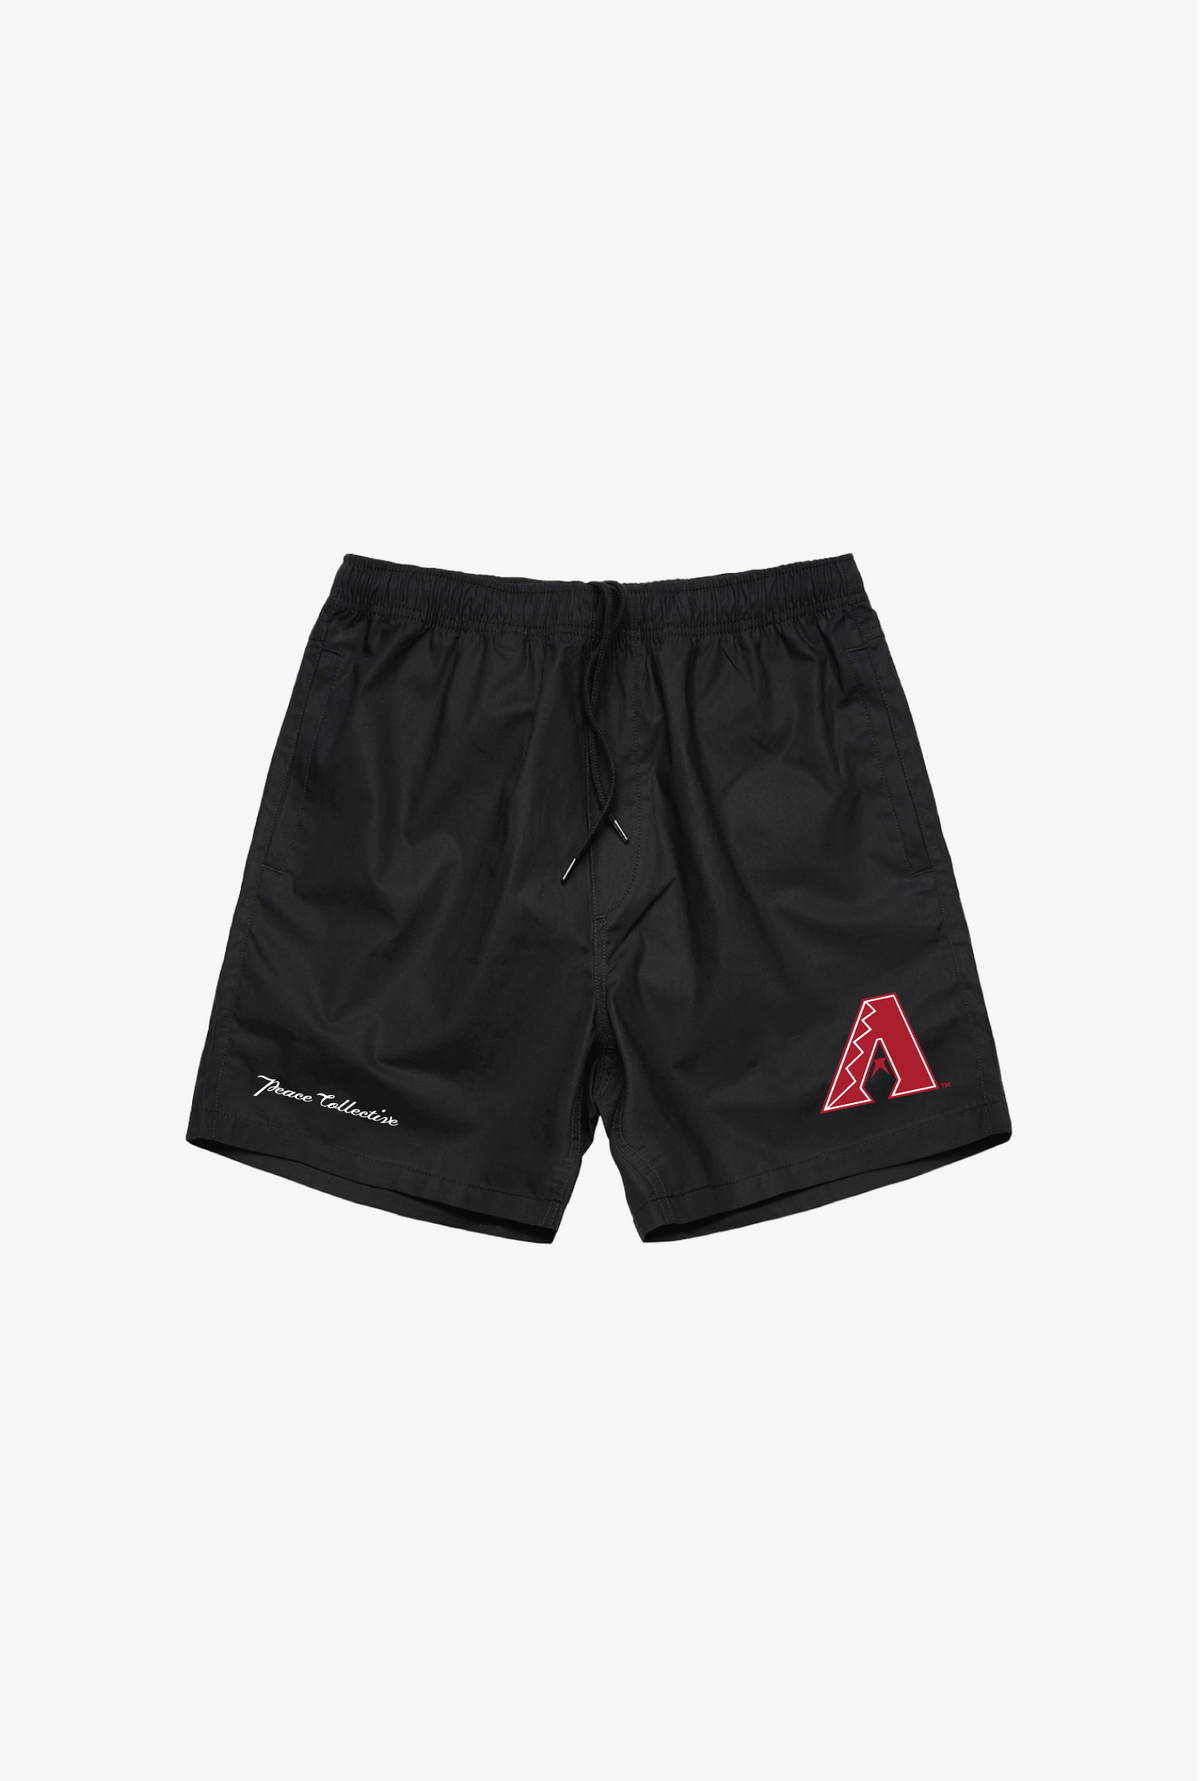 Arizona Diamondbacks Board Shorts - Black